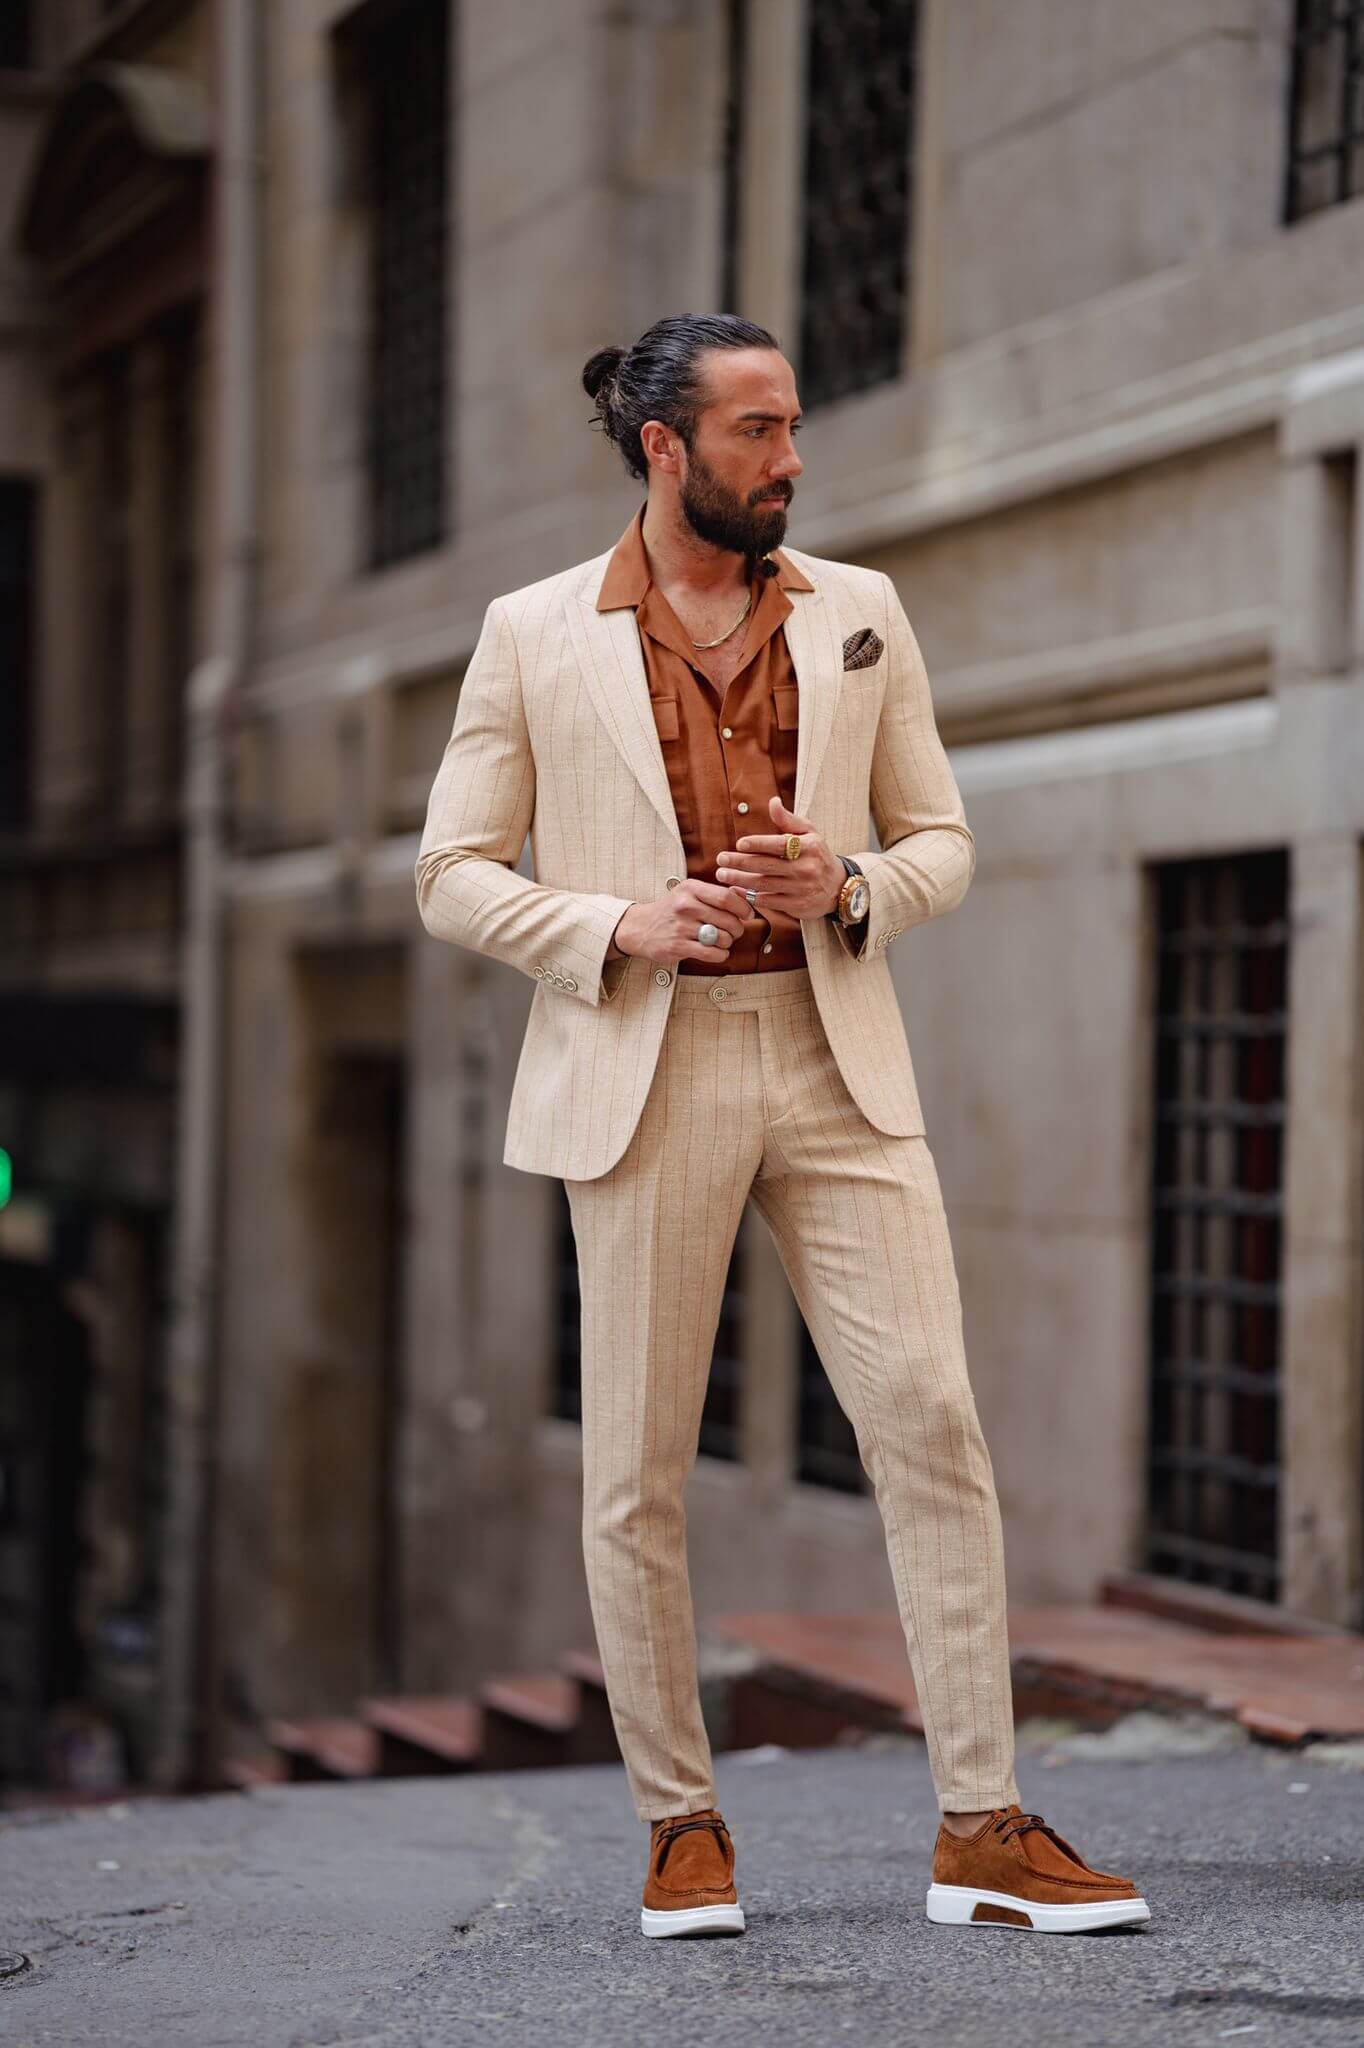 Men's Striped Beige Linen Suit - The Ultimate Summer Suit – HolloMen